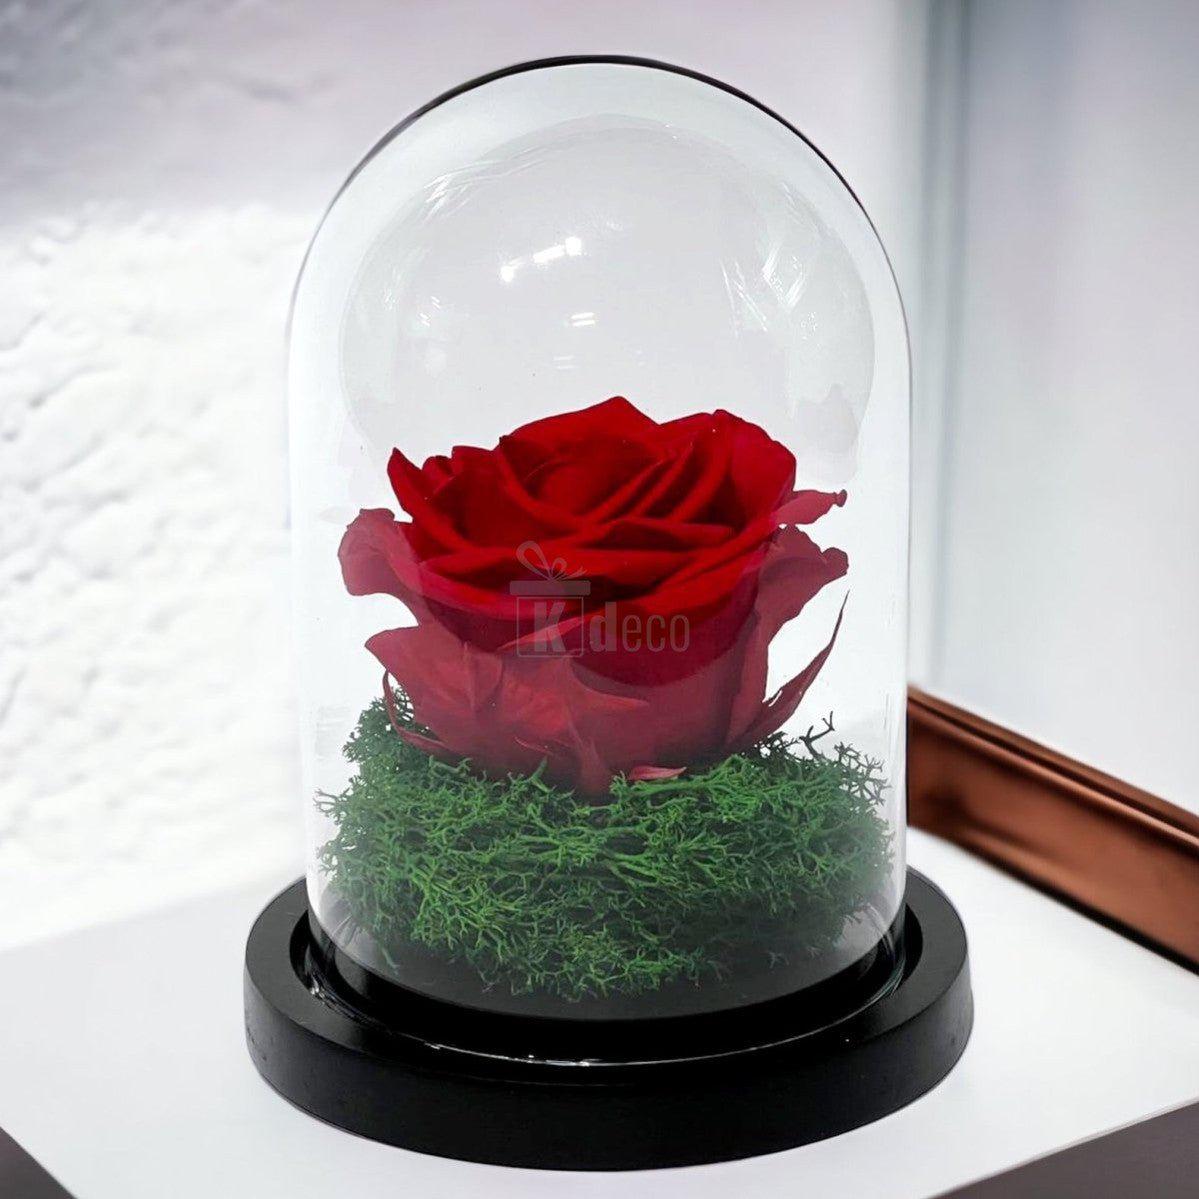 Trandafir Criogenat Premium Rosu in Cupola de Sticla - 25 de Ani de Prospetime - Kdeco.ro